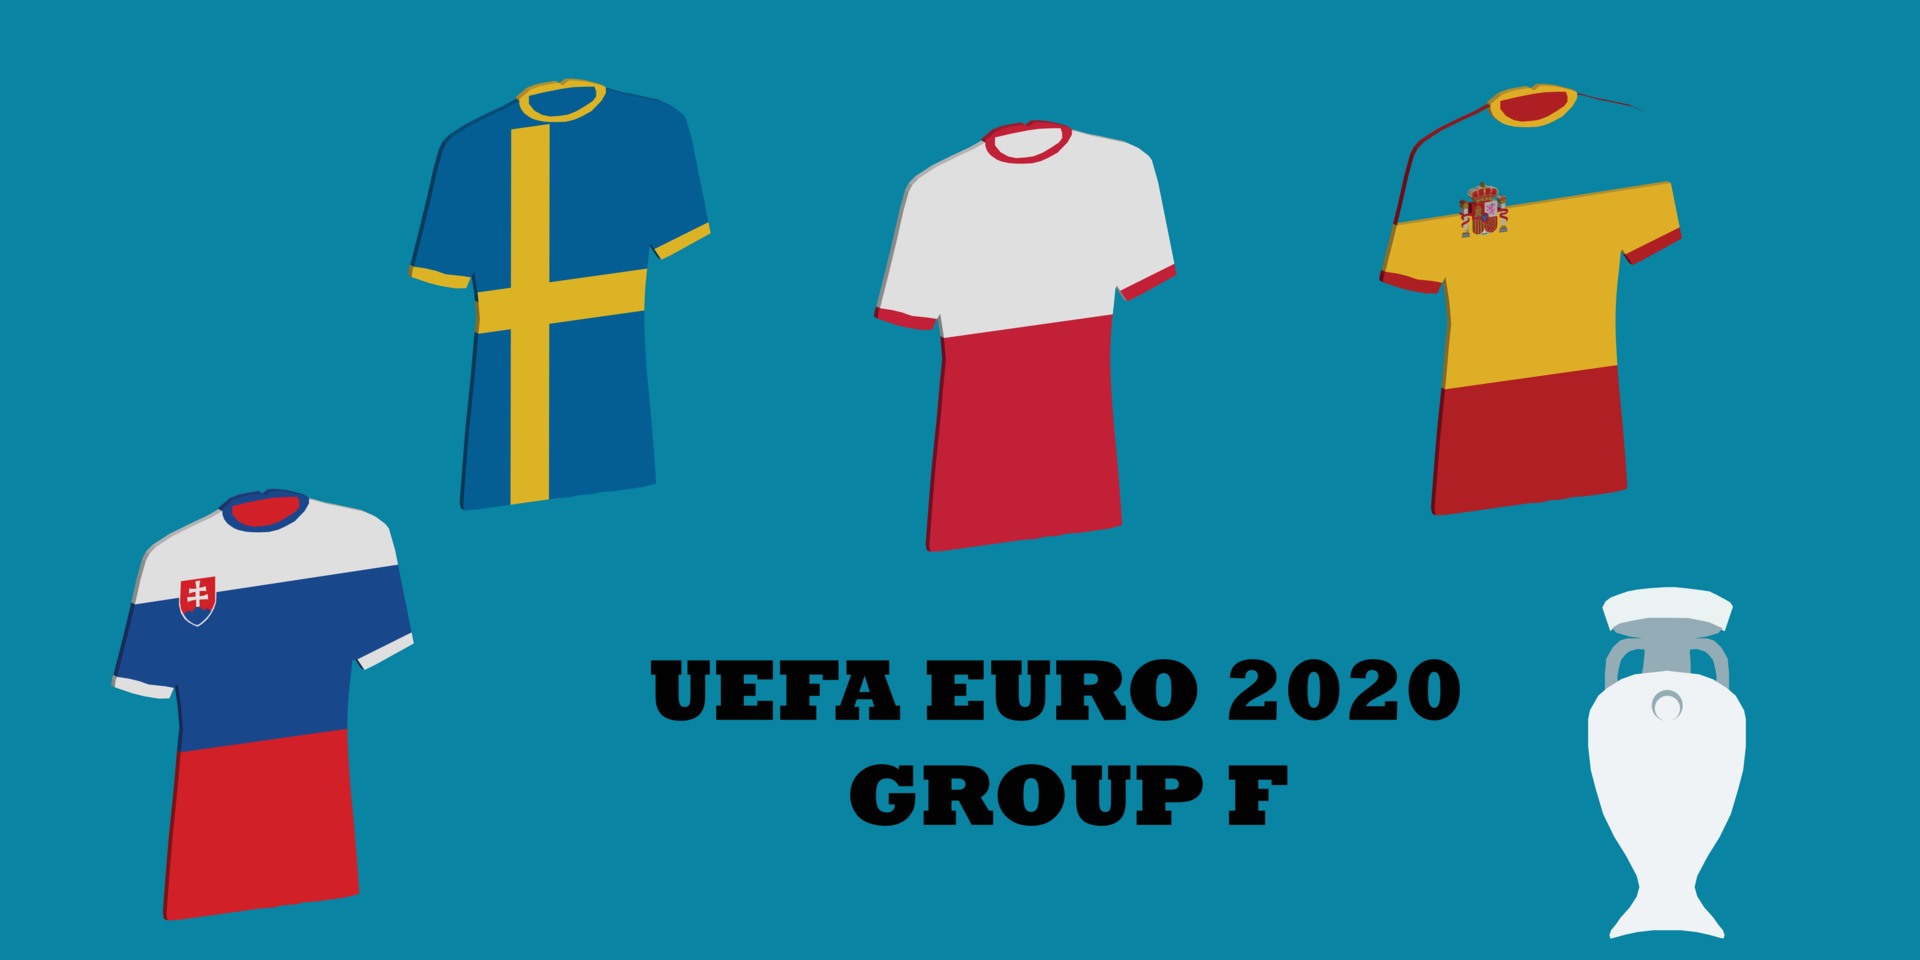 2020 group f euro UEFA Euro